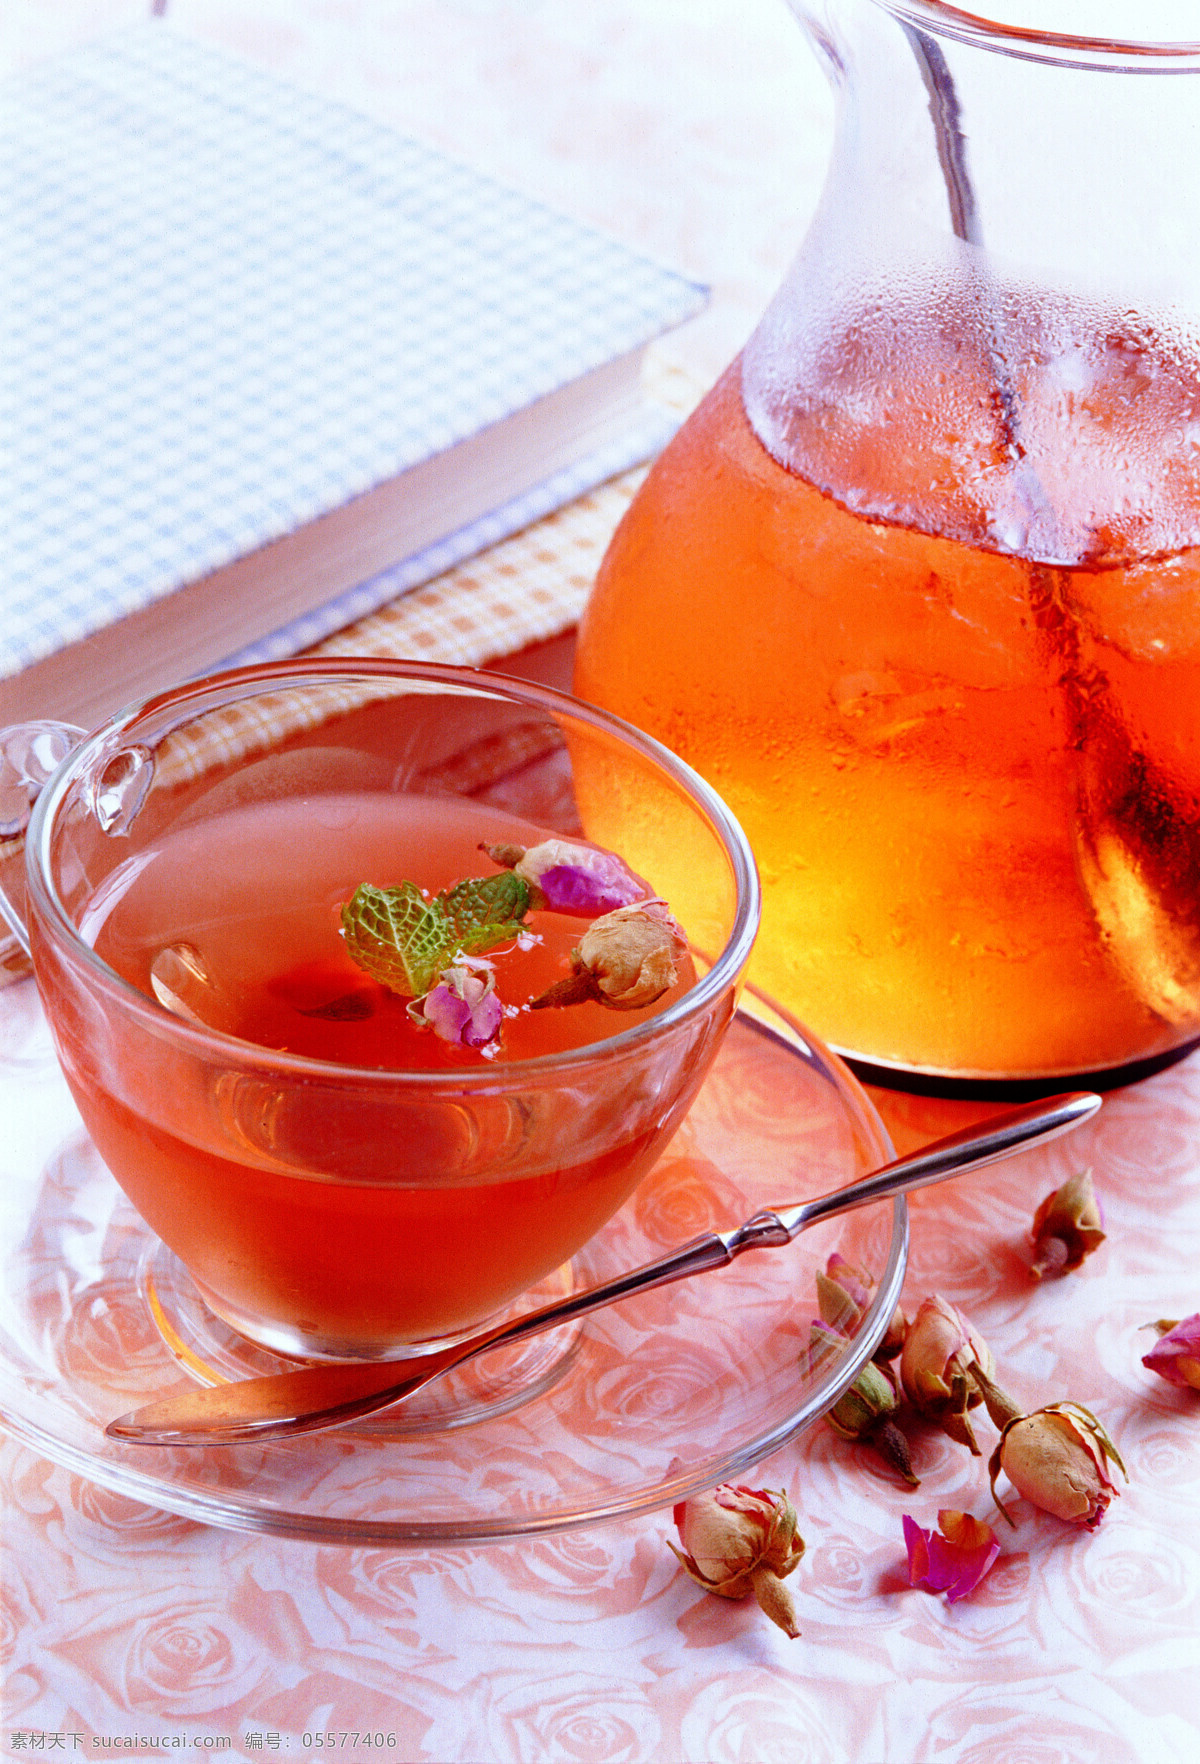 花草茶 冰茶 红茶 果茶 杯子 玻璃杯 茶杯 玫瑰茶 玫瑰 花茶 杯 饮品 餐饮美食 饮料酒水